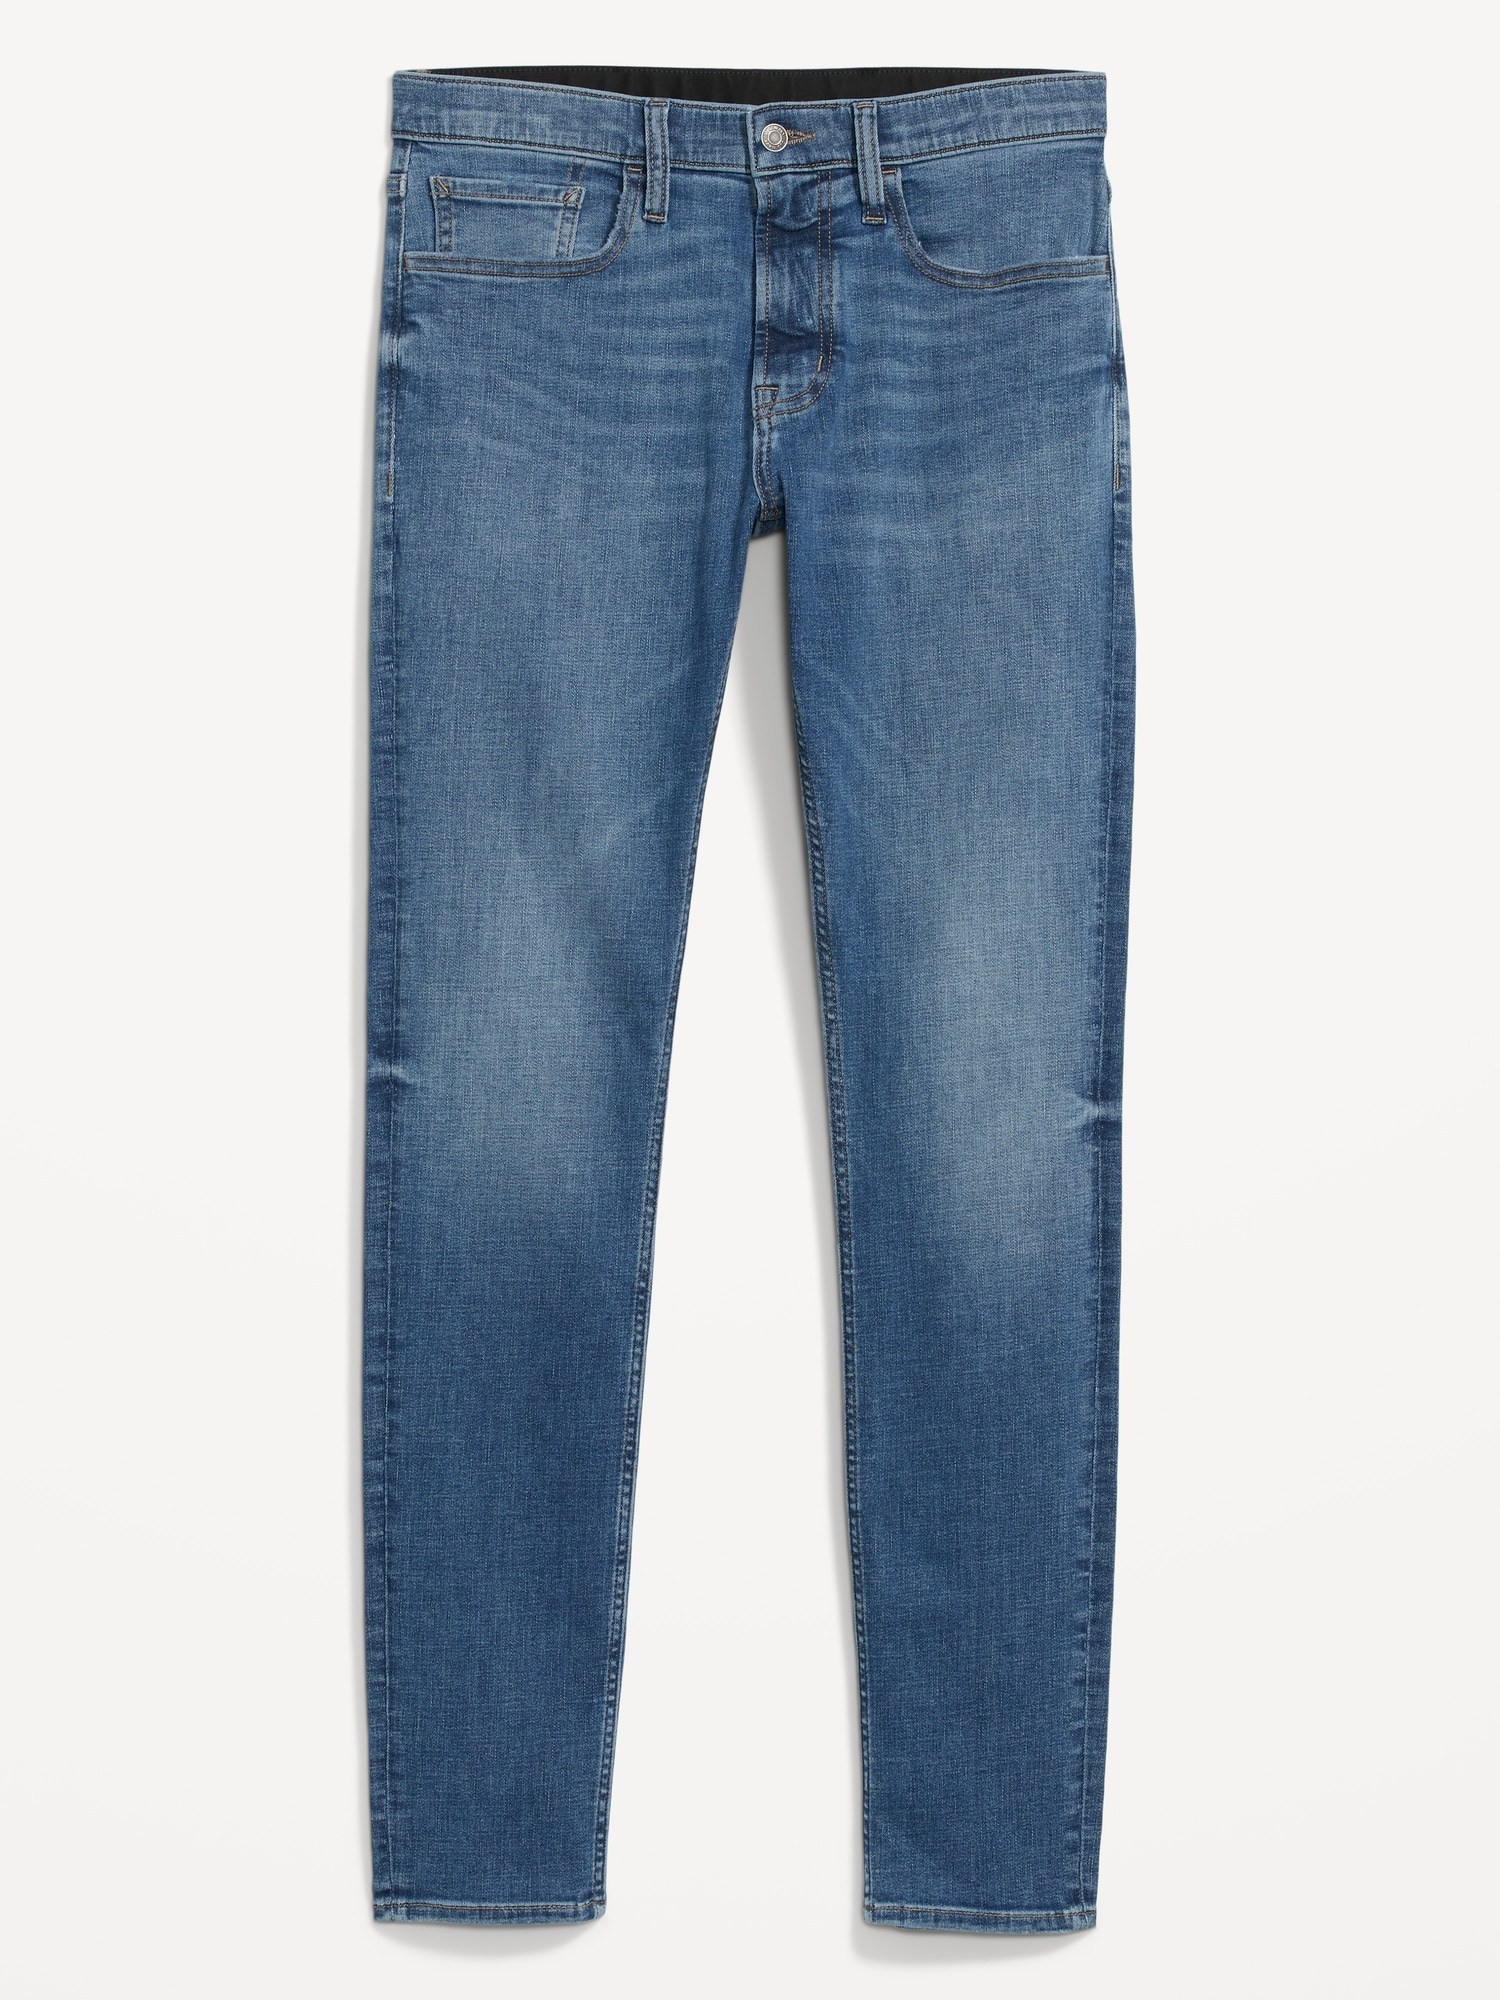 Scotch&Soda Skim Harpoon Blue Slim Fit Tapered Jeans Size W28 / L32